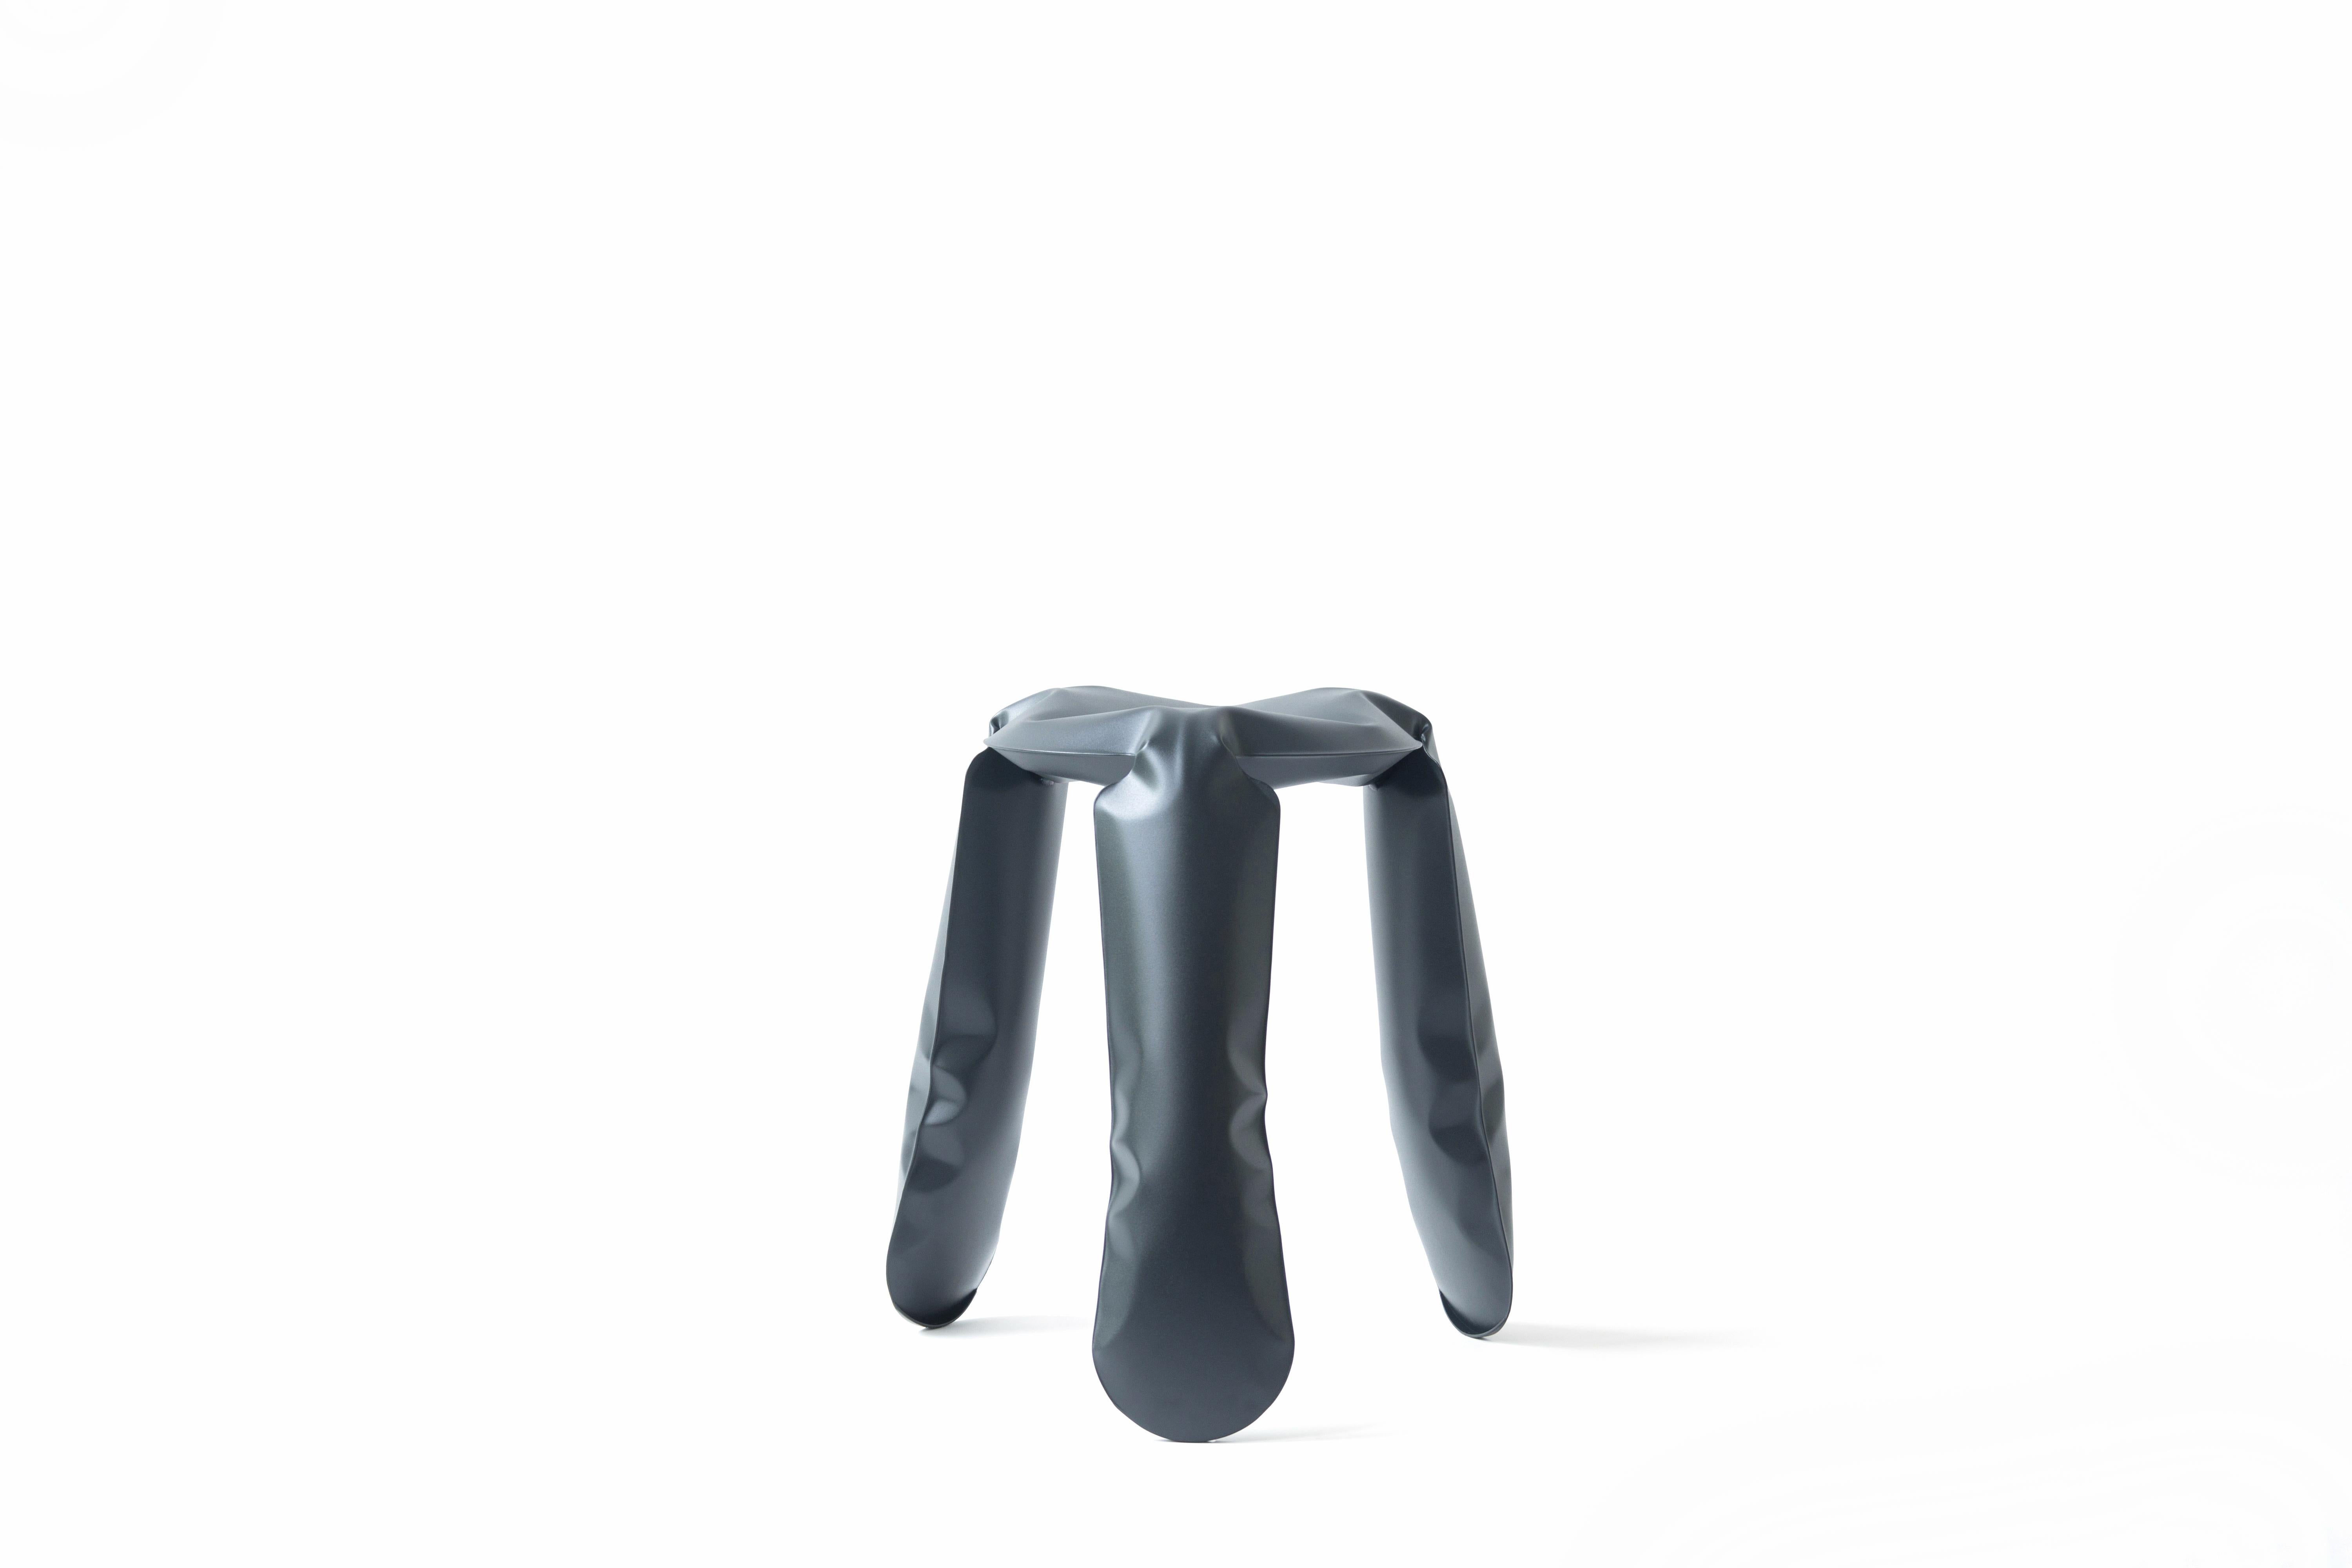 Tabouret Standard Plopp en acier graphite de Zieta
Dimensions : D 35 x H 50 cm 
Matériau : Acier au carbone. 
Finition : Revêtement en poudre. 
Disponible en couleurs : Graphite, Moss Grey, Umbra Grey, Beige Grey, Blue Grey. Disponible en acier